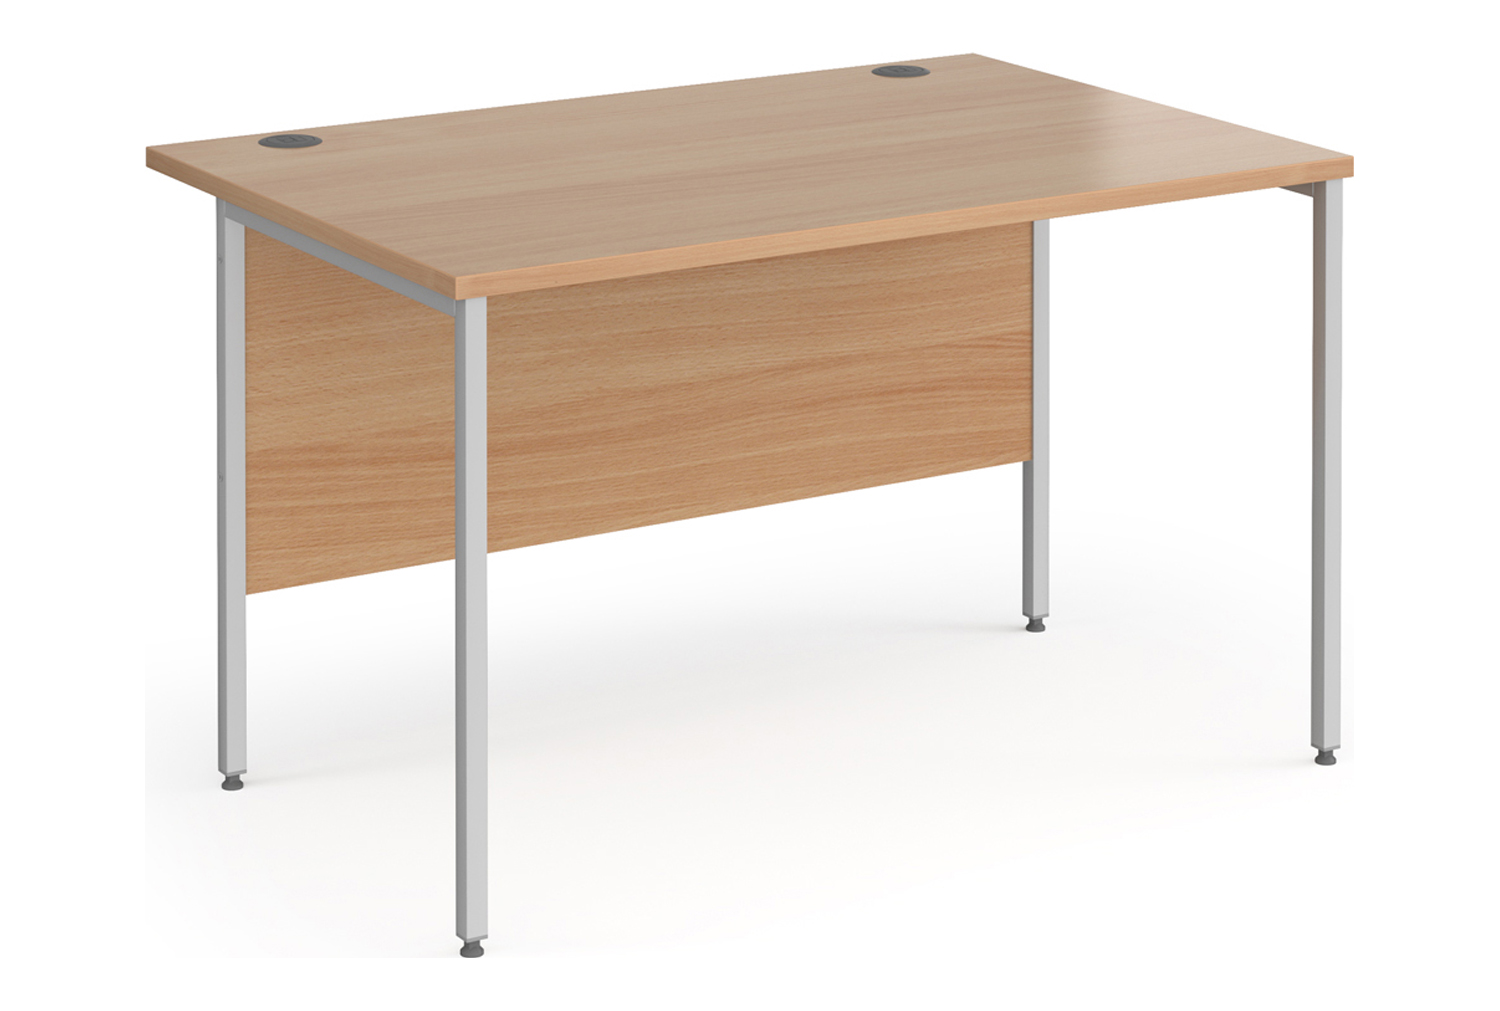 Value Line Classic+ Rectangular H-Leg Office Desk (Silver Leg), 120wx80dx73h (cm), Beech